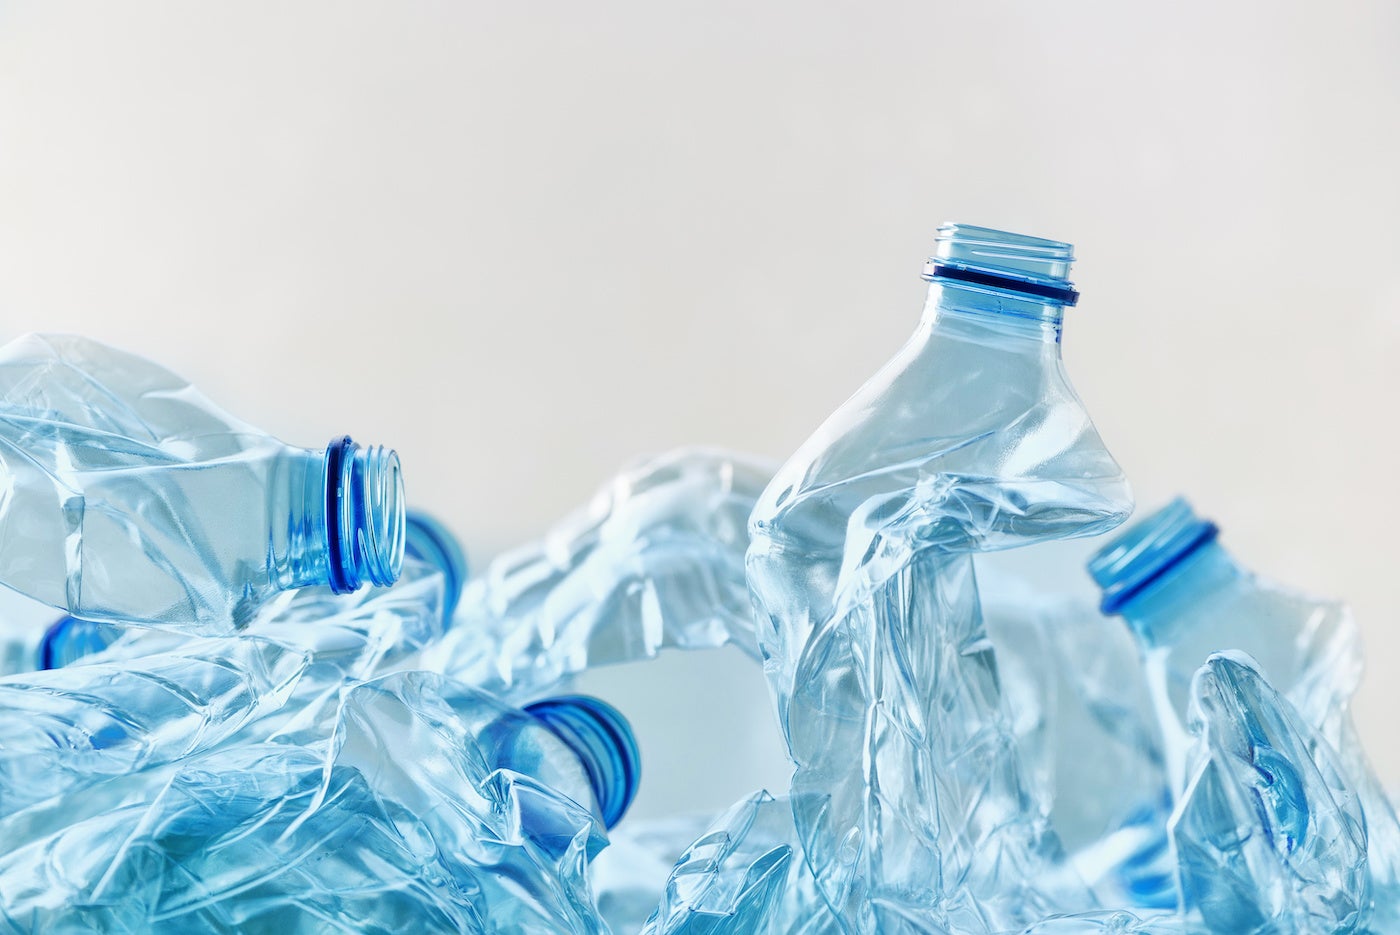 Solusi berkelanjutan untuk pengolahan limbah plastik teknis